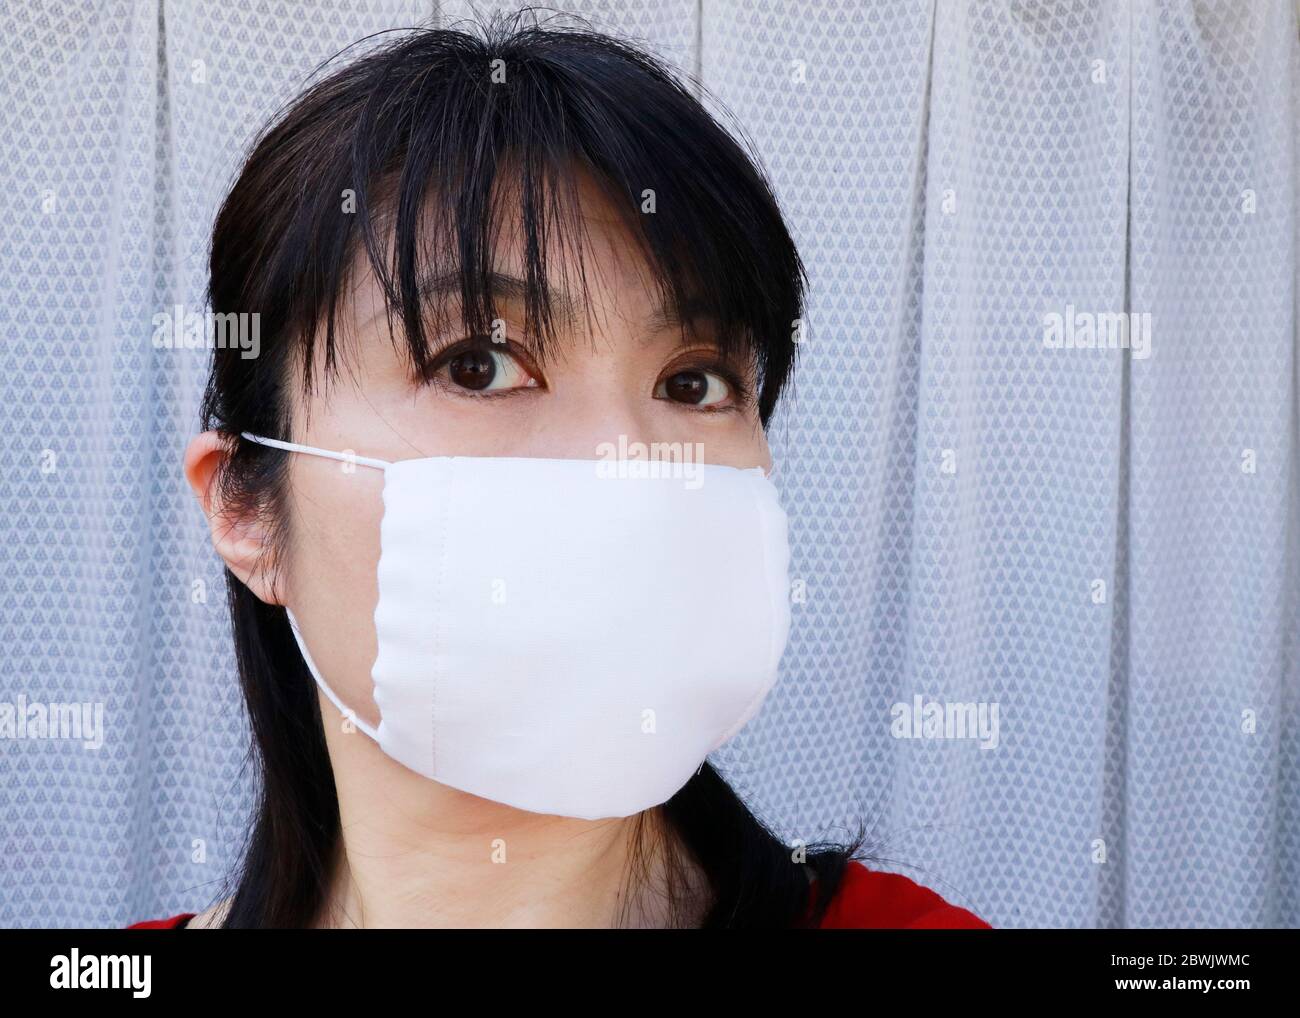 Le masque connu sous le nom d'Abenomask a finalement commencé la  distribution à la fin du mois de mai. Le Premier ministre Abe a annoncé de  fournir 2 masques en tissu pour